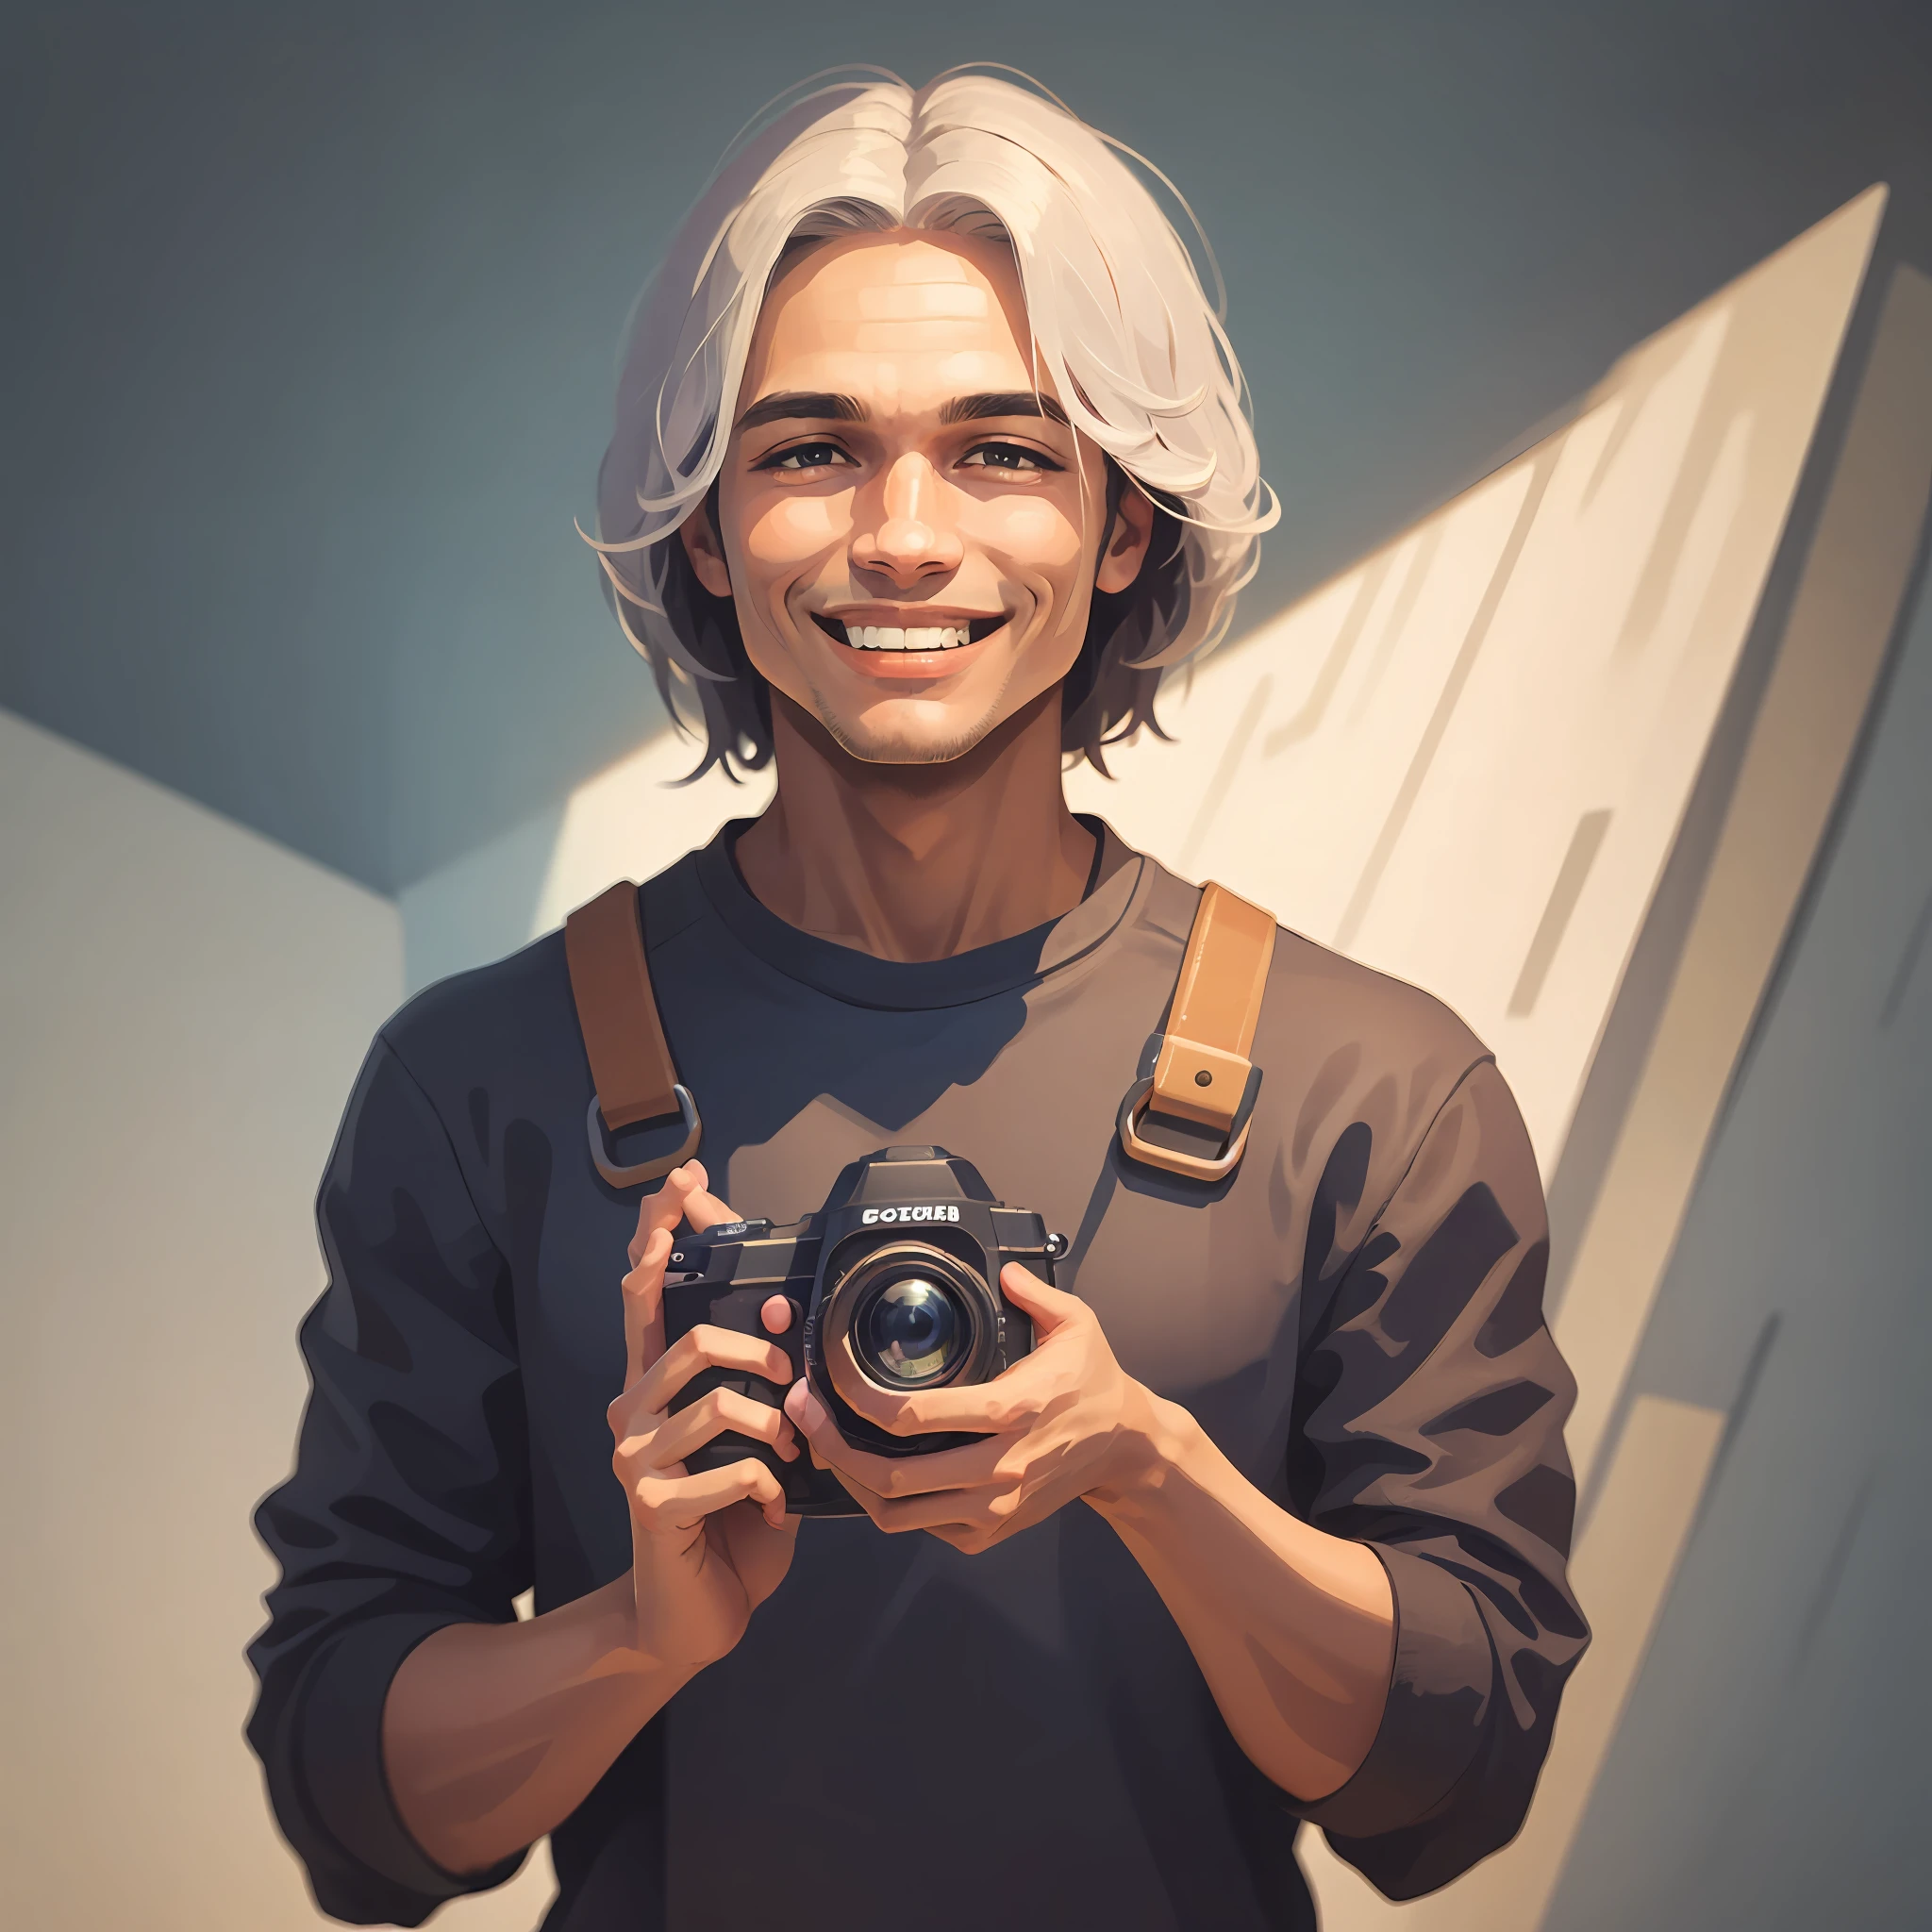 Uma imagem de um homem jovem, com cabelos escuros e olhos expressivos, sorrindo casualmente. Ele está com uma câmera nas mãos, mostrando sua paixão pela fotografia. --auto